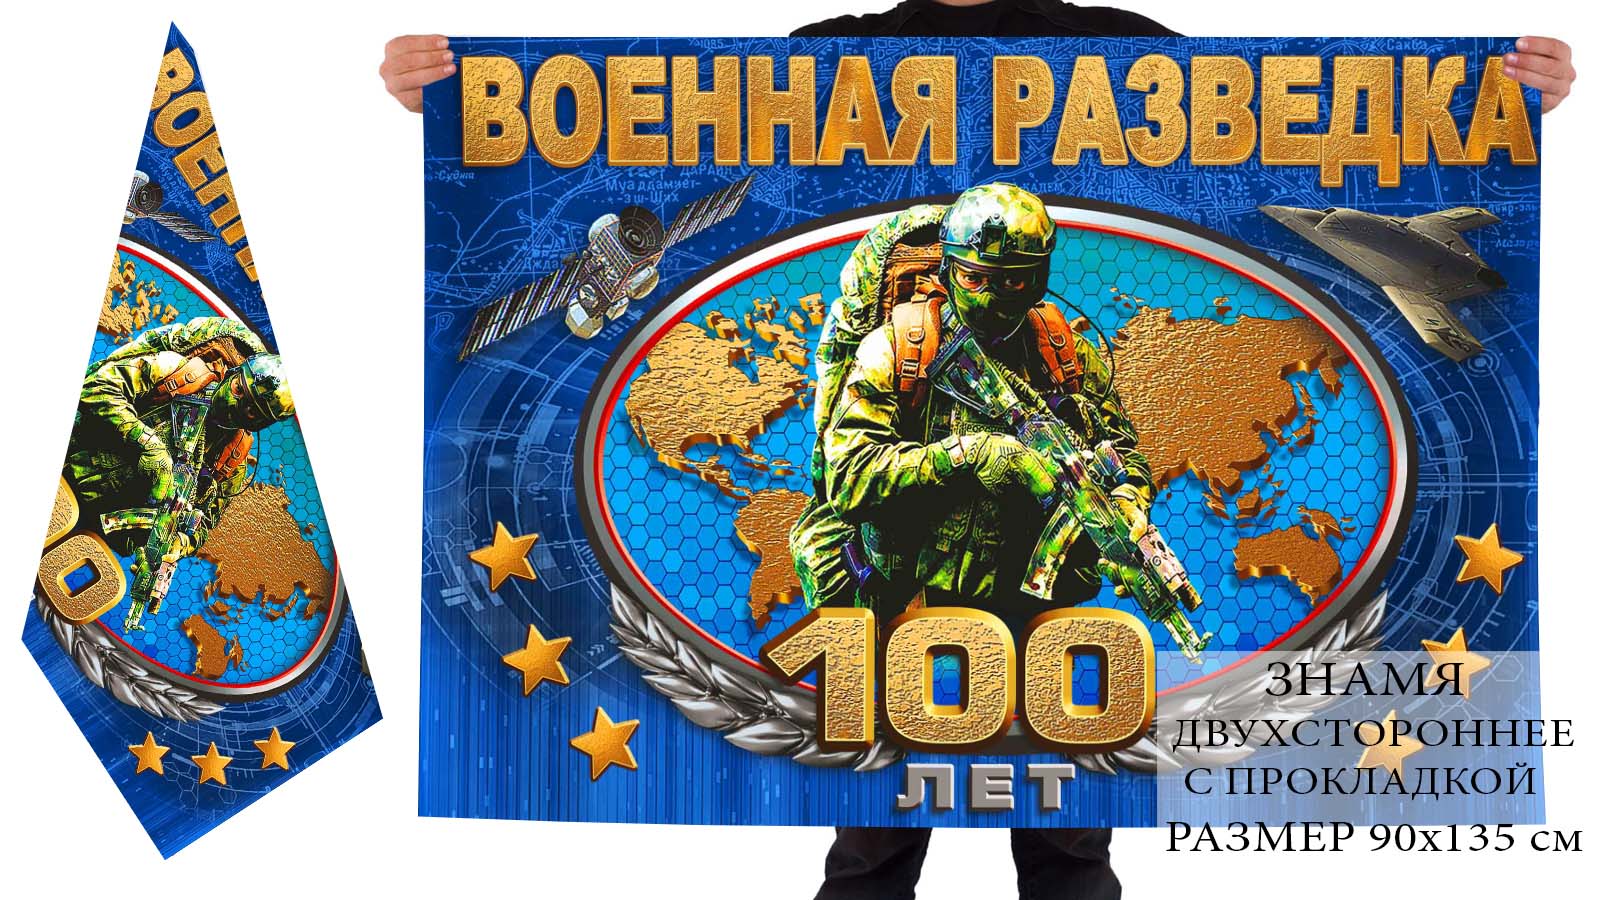 Купить двухсторонний флаг "Военной разведке 100 лет" недорого